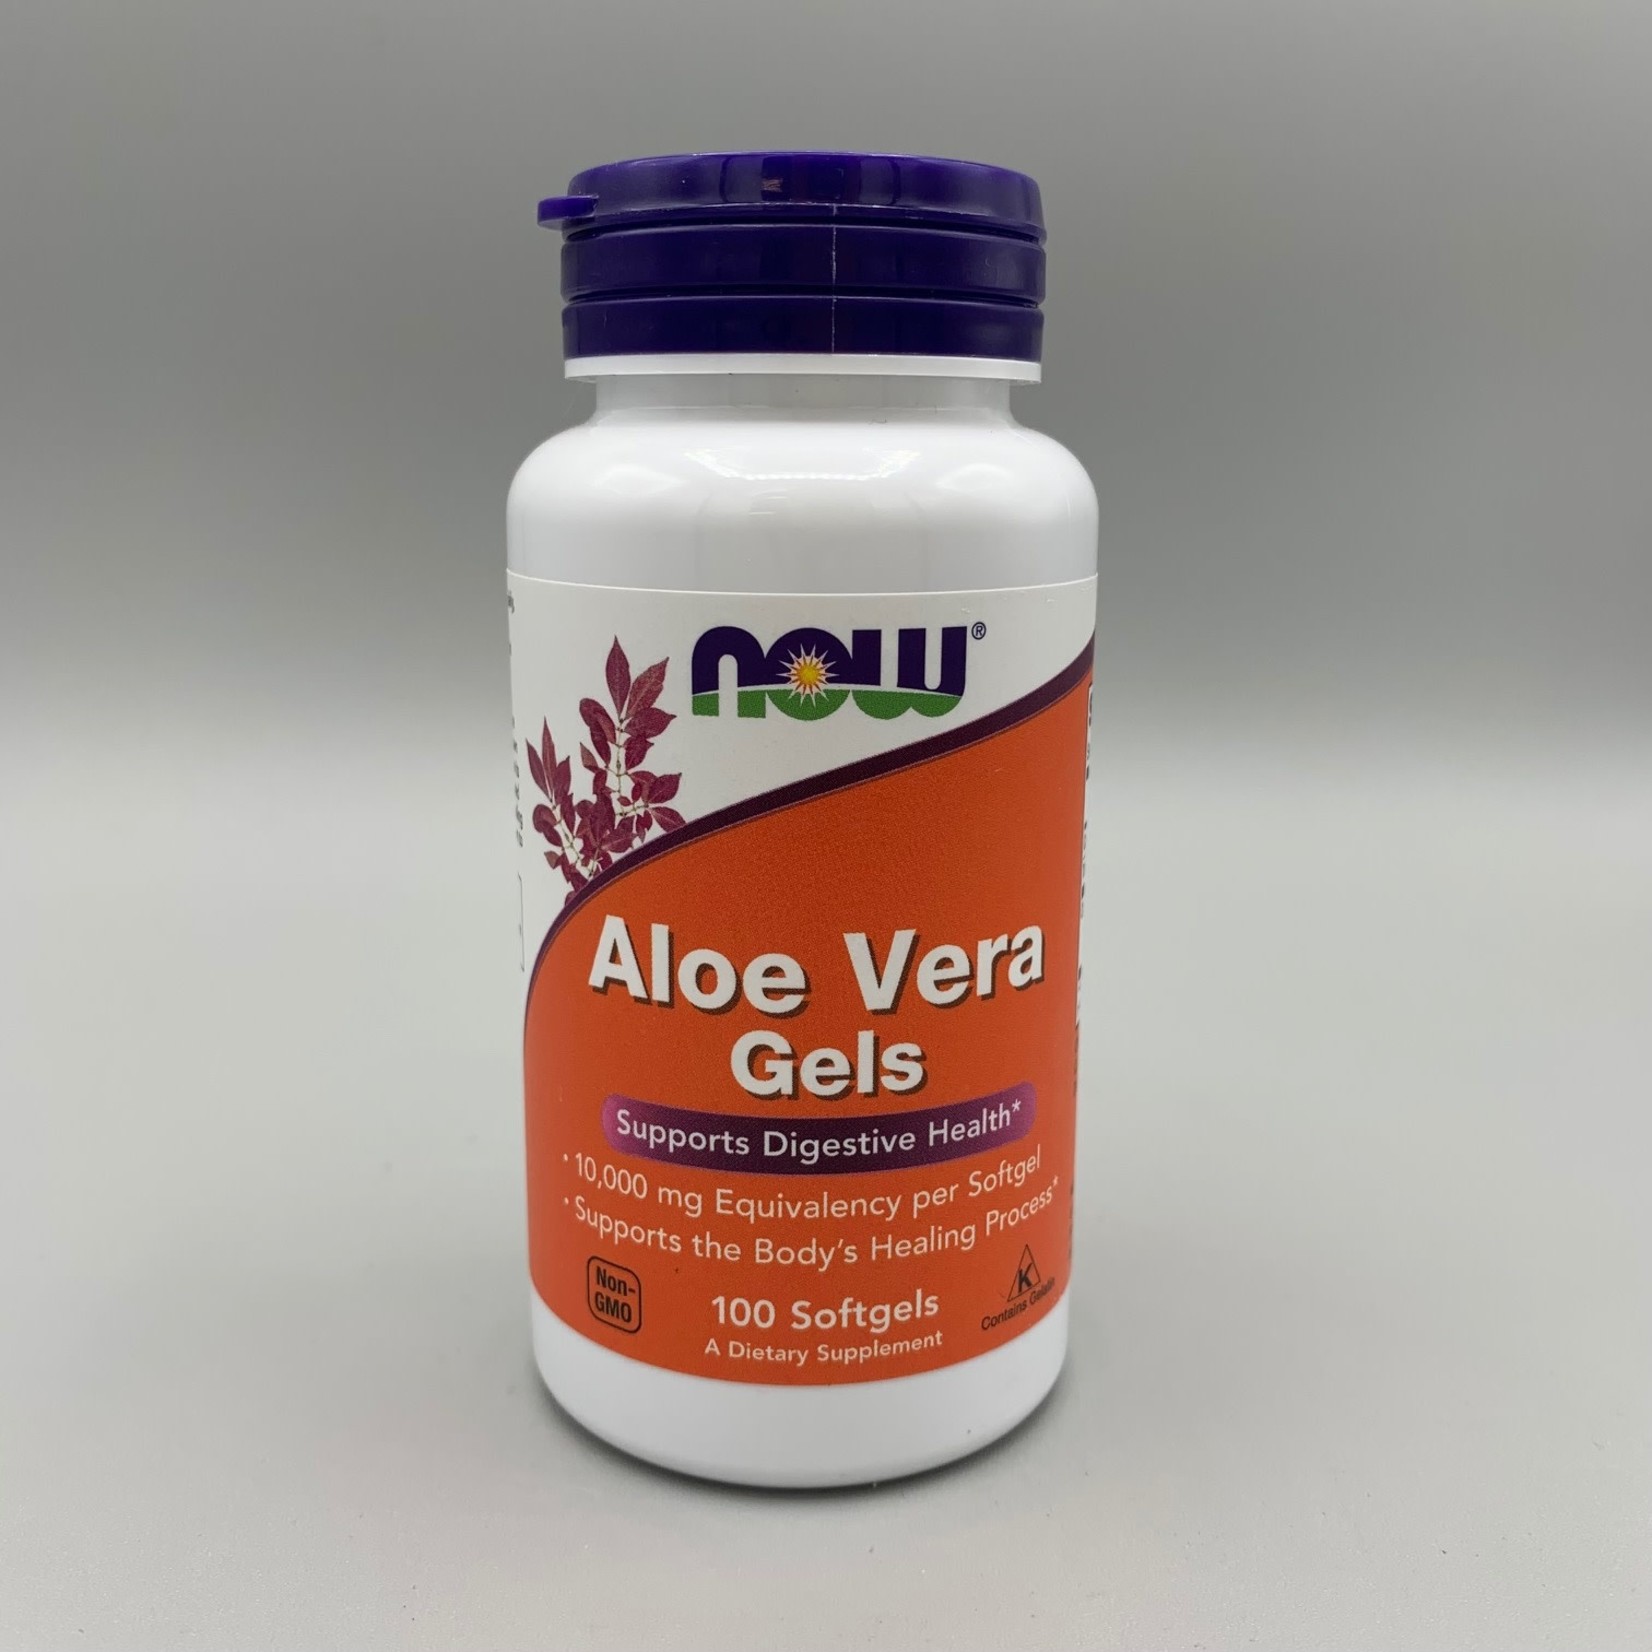 NOW Aloe Vera Gels, 100 Softgels